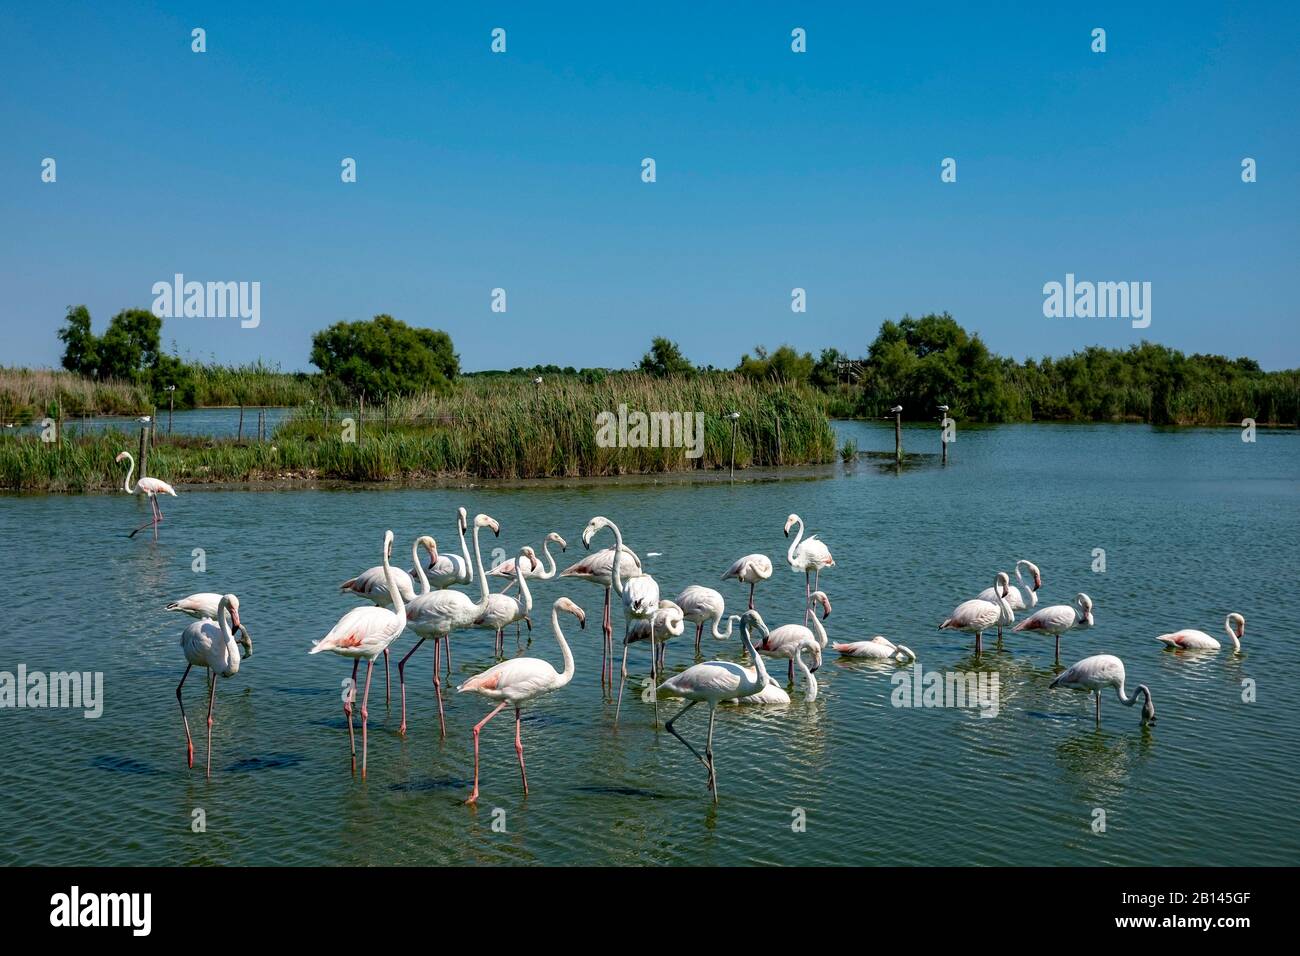 Flamingos in the Parc Ornithologique du Pont de Gau, Oiseaux de Camargue, Southern France Stock Photo